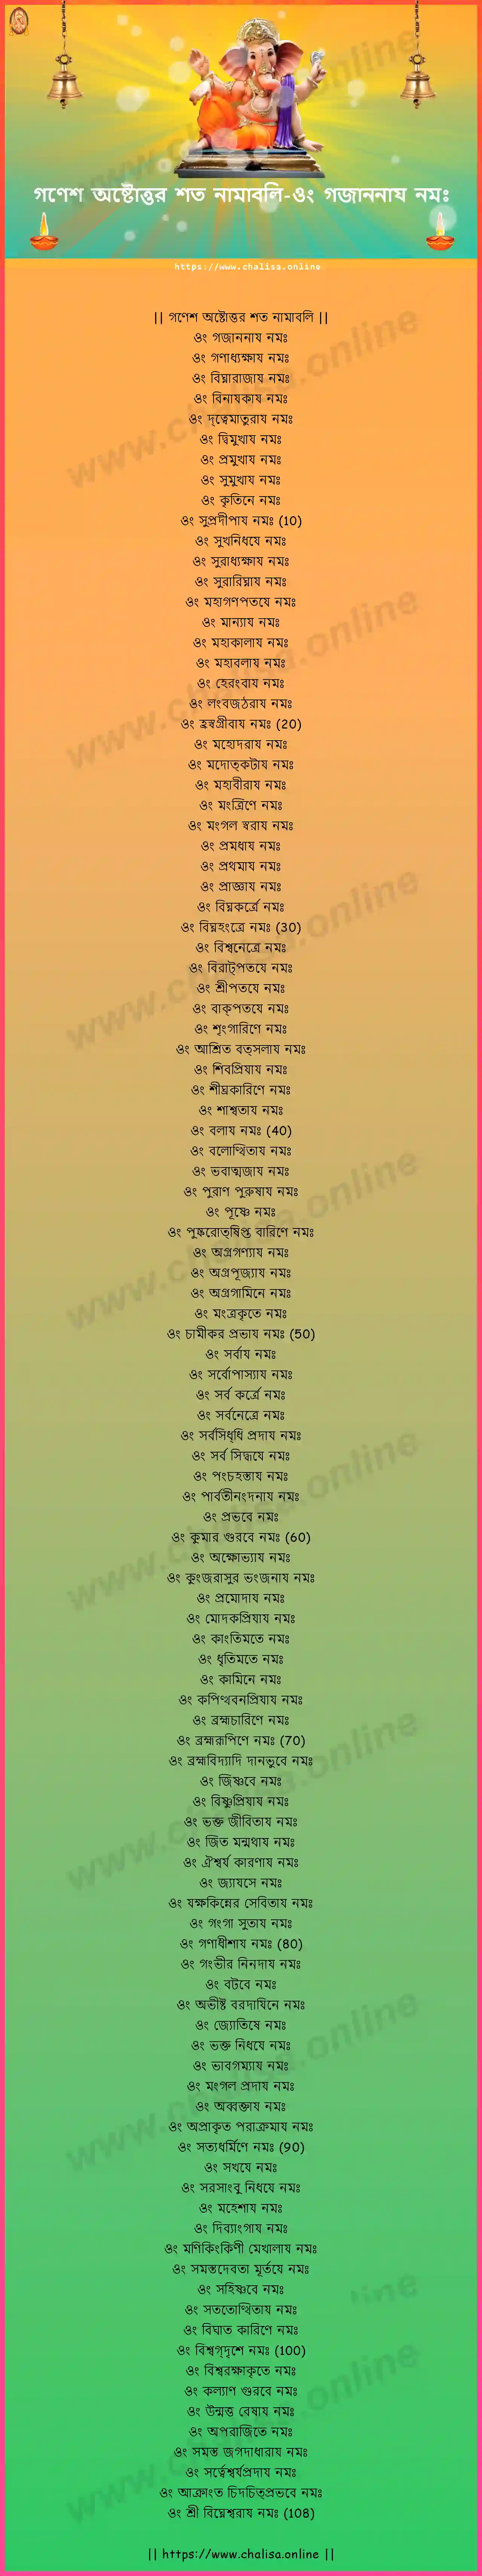 om-gajananaya-ganesha-ashtottara-sata-namavali-assamese-assamese-lyrics-download